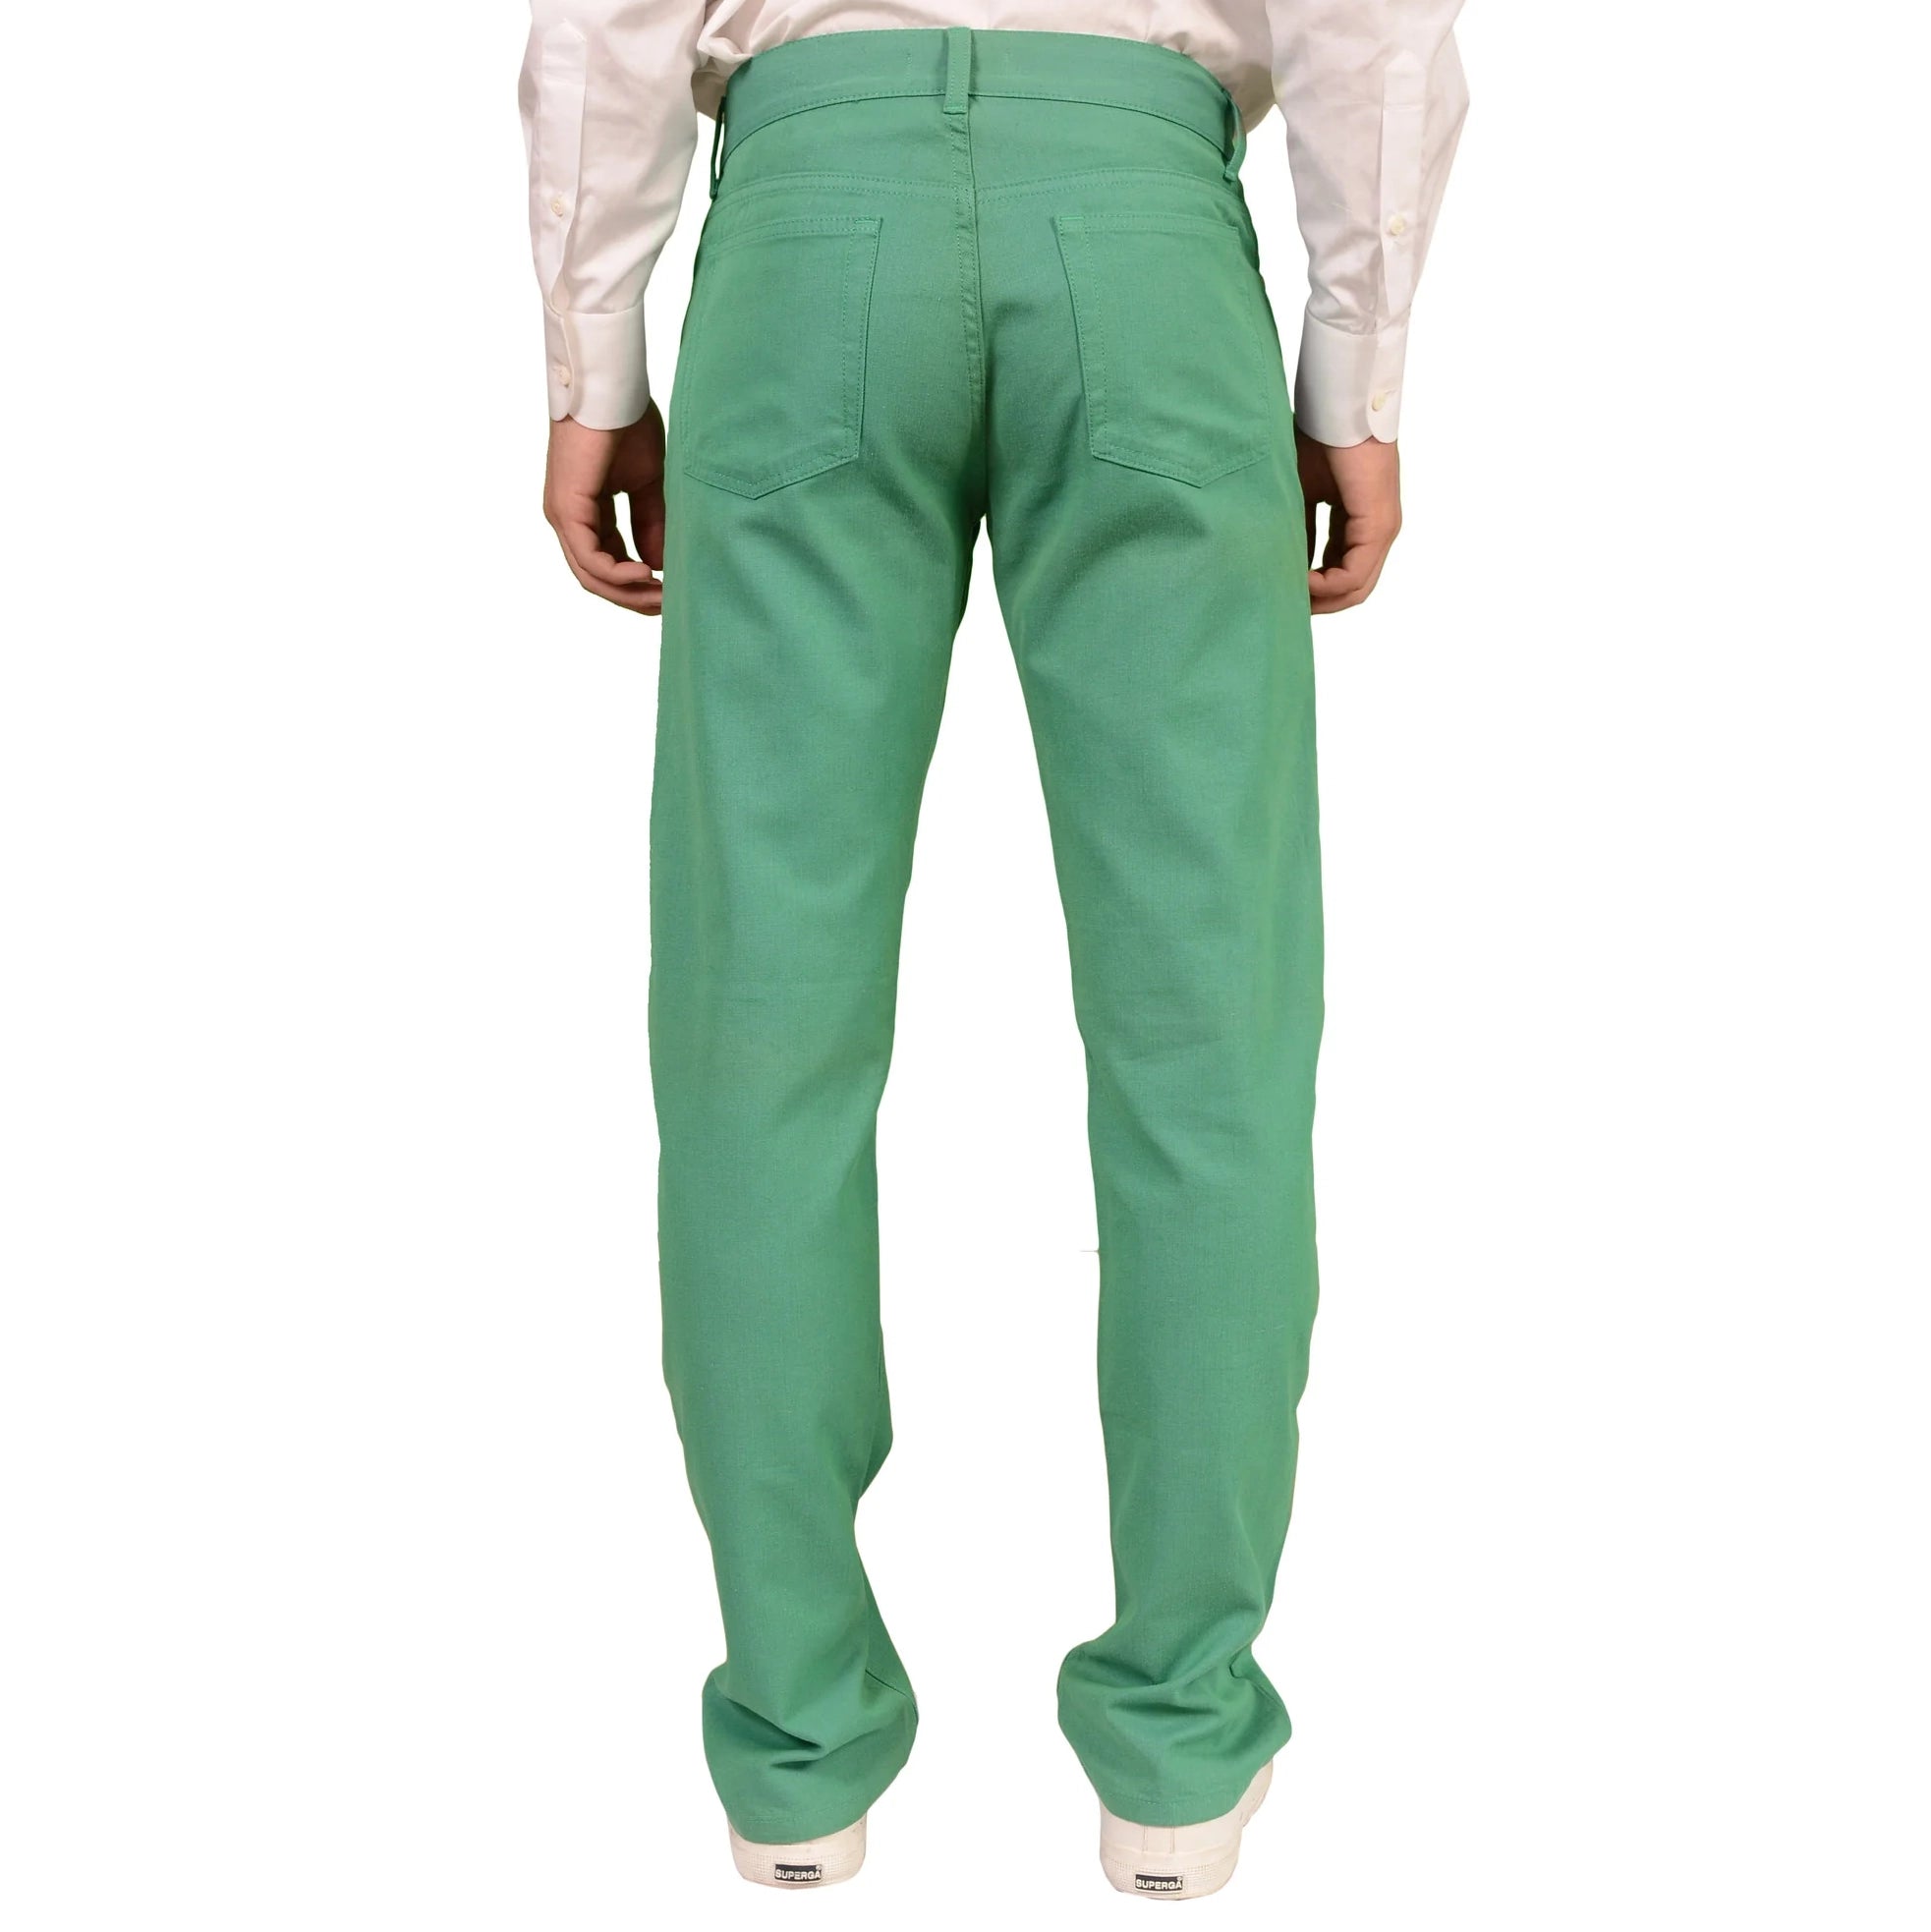 RUBINACCI Napoli Green Cotton Jeans Pants NEW US 38 Straight Fit RUBINACCI